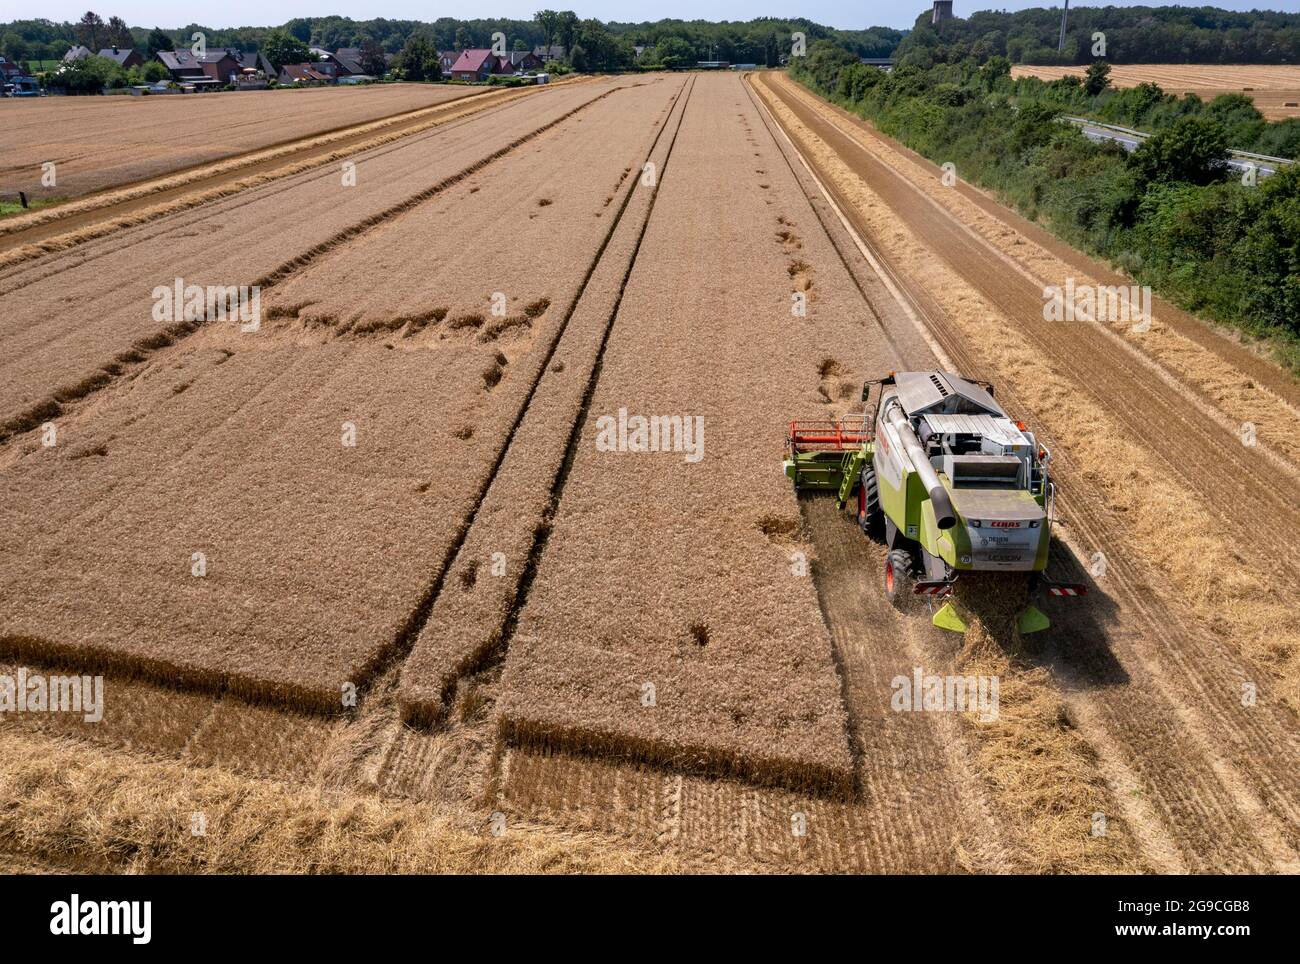 Landwirtschaft, Getreideernte, Weizen, Mähdrescher bei der Ernte auf einem Weizenfeld, bei Niederkrüchten, NRW, Deutschland, Foto Stock